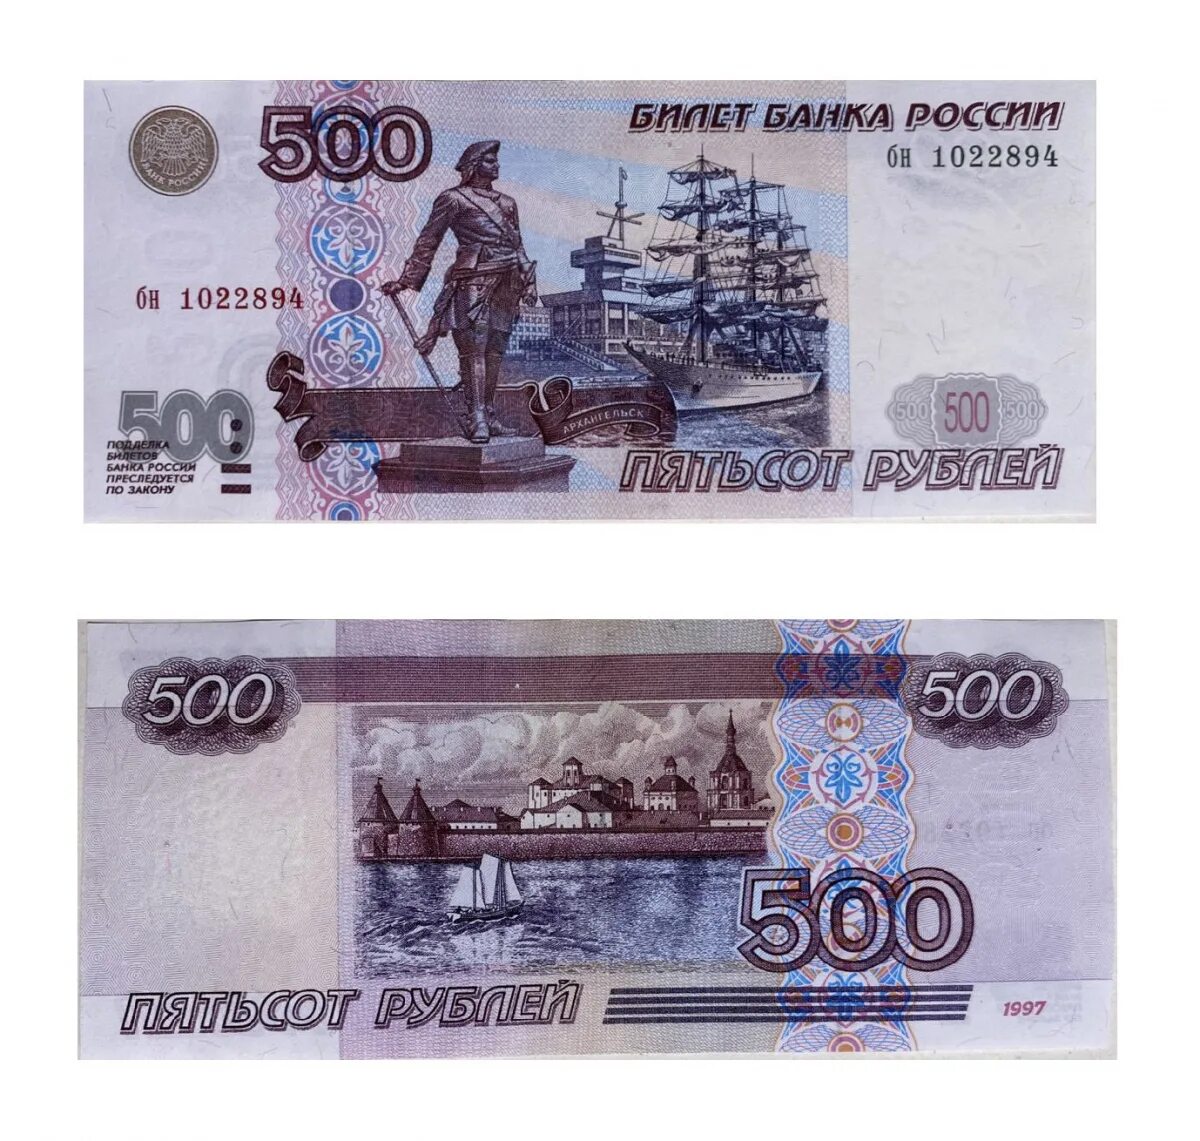 Черные 500 рублей. Купюра 500 рублей. 500 Рублей. Банкнота 500 рублей. 500 RUBLLIK kupyura.